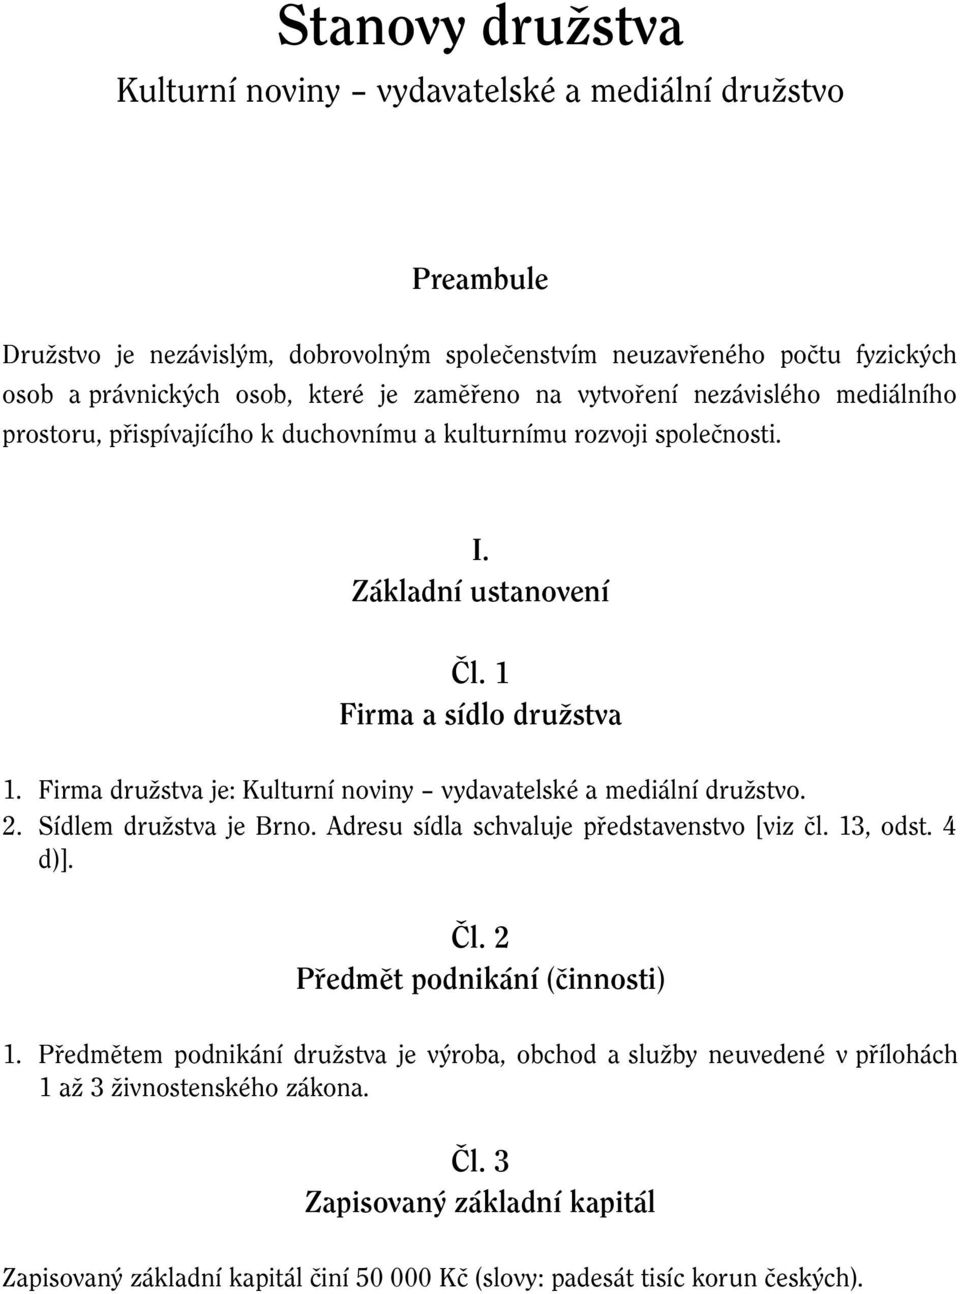 Firma družstva je: Kulturní noviny vydavatelské a mediální družstvo. 2. Sídlem družstva je Brno. Adresu sídla schvaluje představenstvo [viz čl. 13, odst. 4 d)]. Čl.